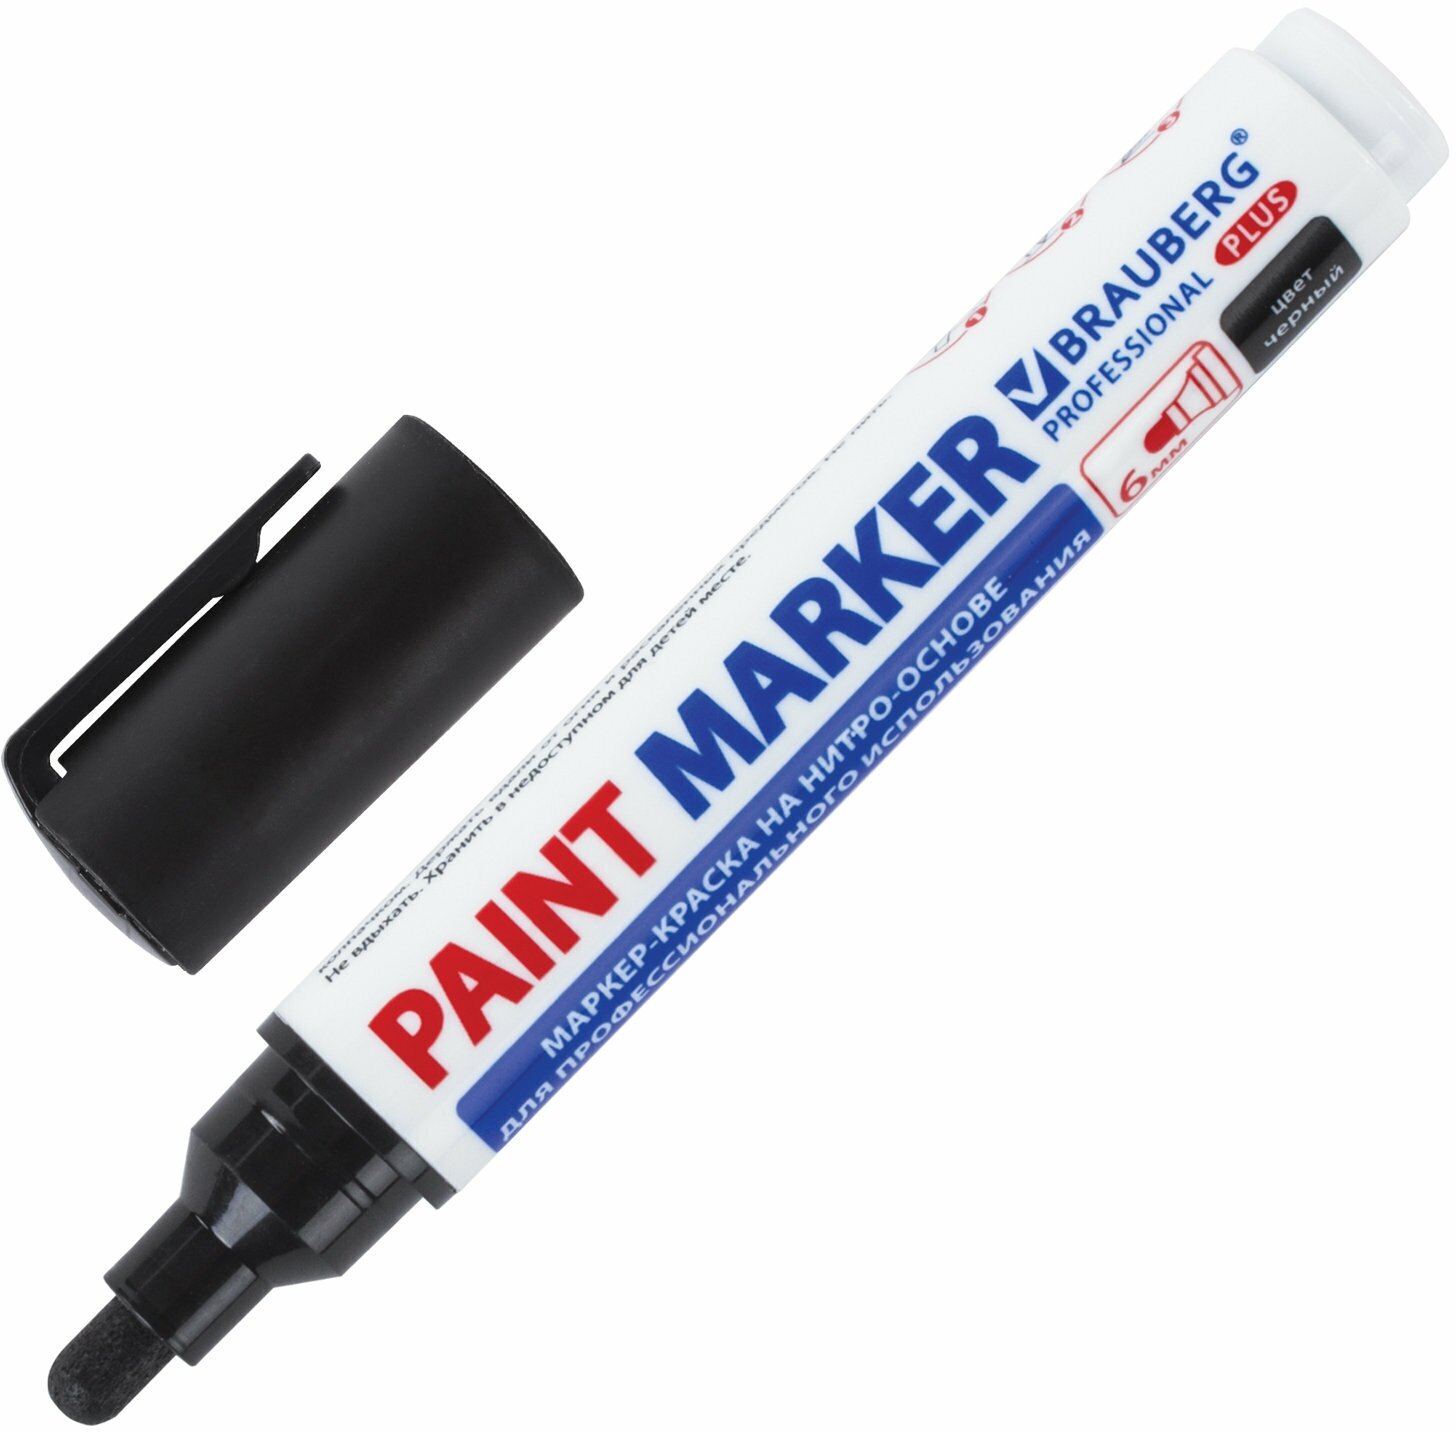 Маркер-краска лаковый paint marker по стеклу / бетону / авто 6 мм, Черный, Нитро-основа, Brauberg Professional Plus Extra, 151451